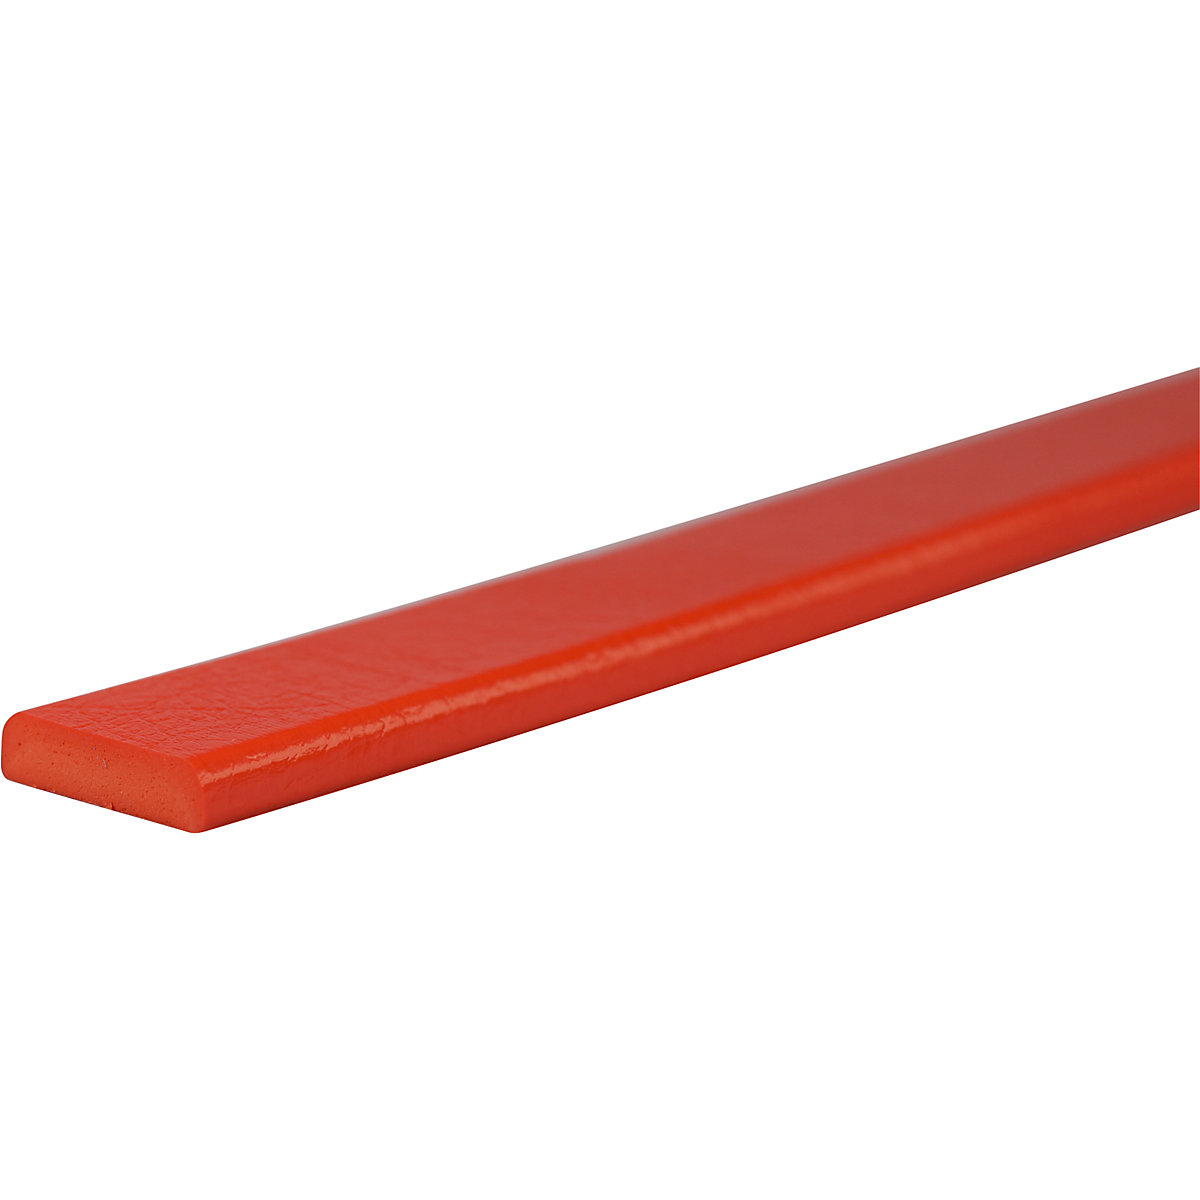 Protection des surfaces Knuffi® – SHG, type F, pièce de 1 m, rouge